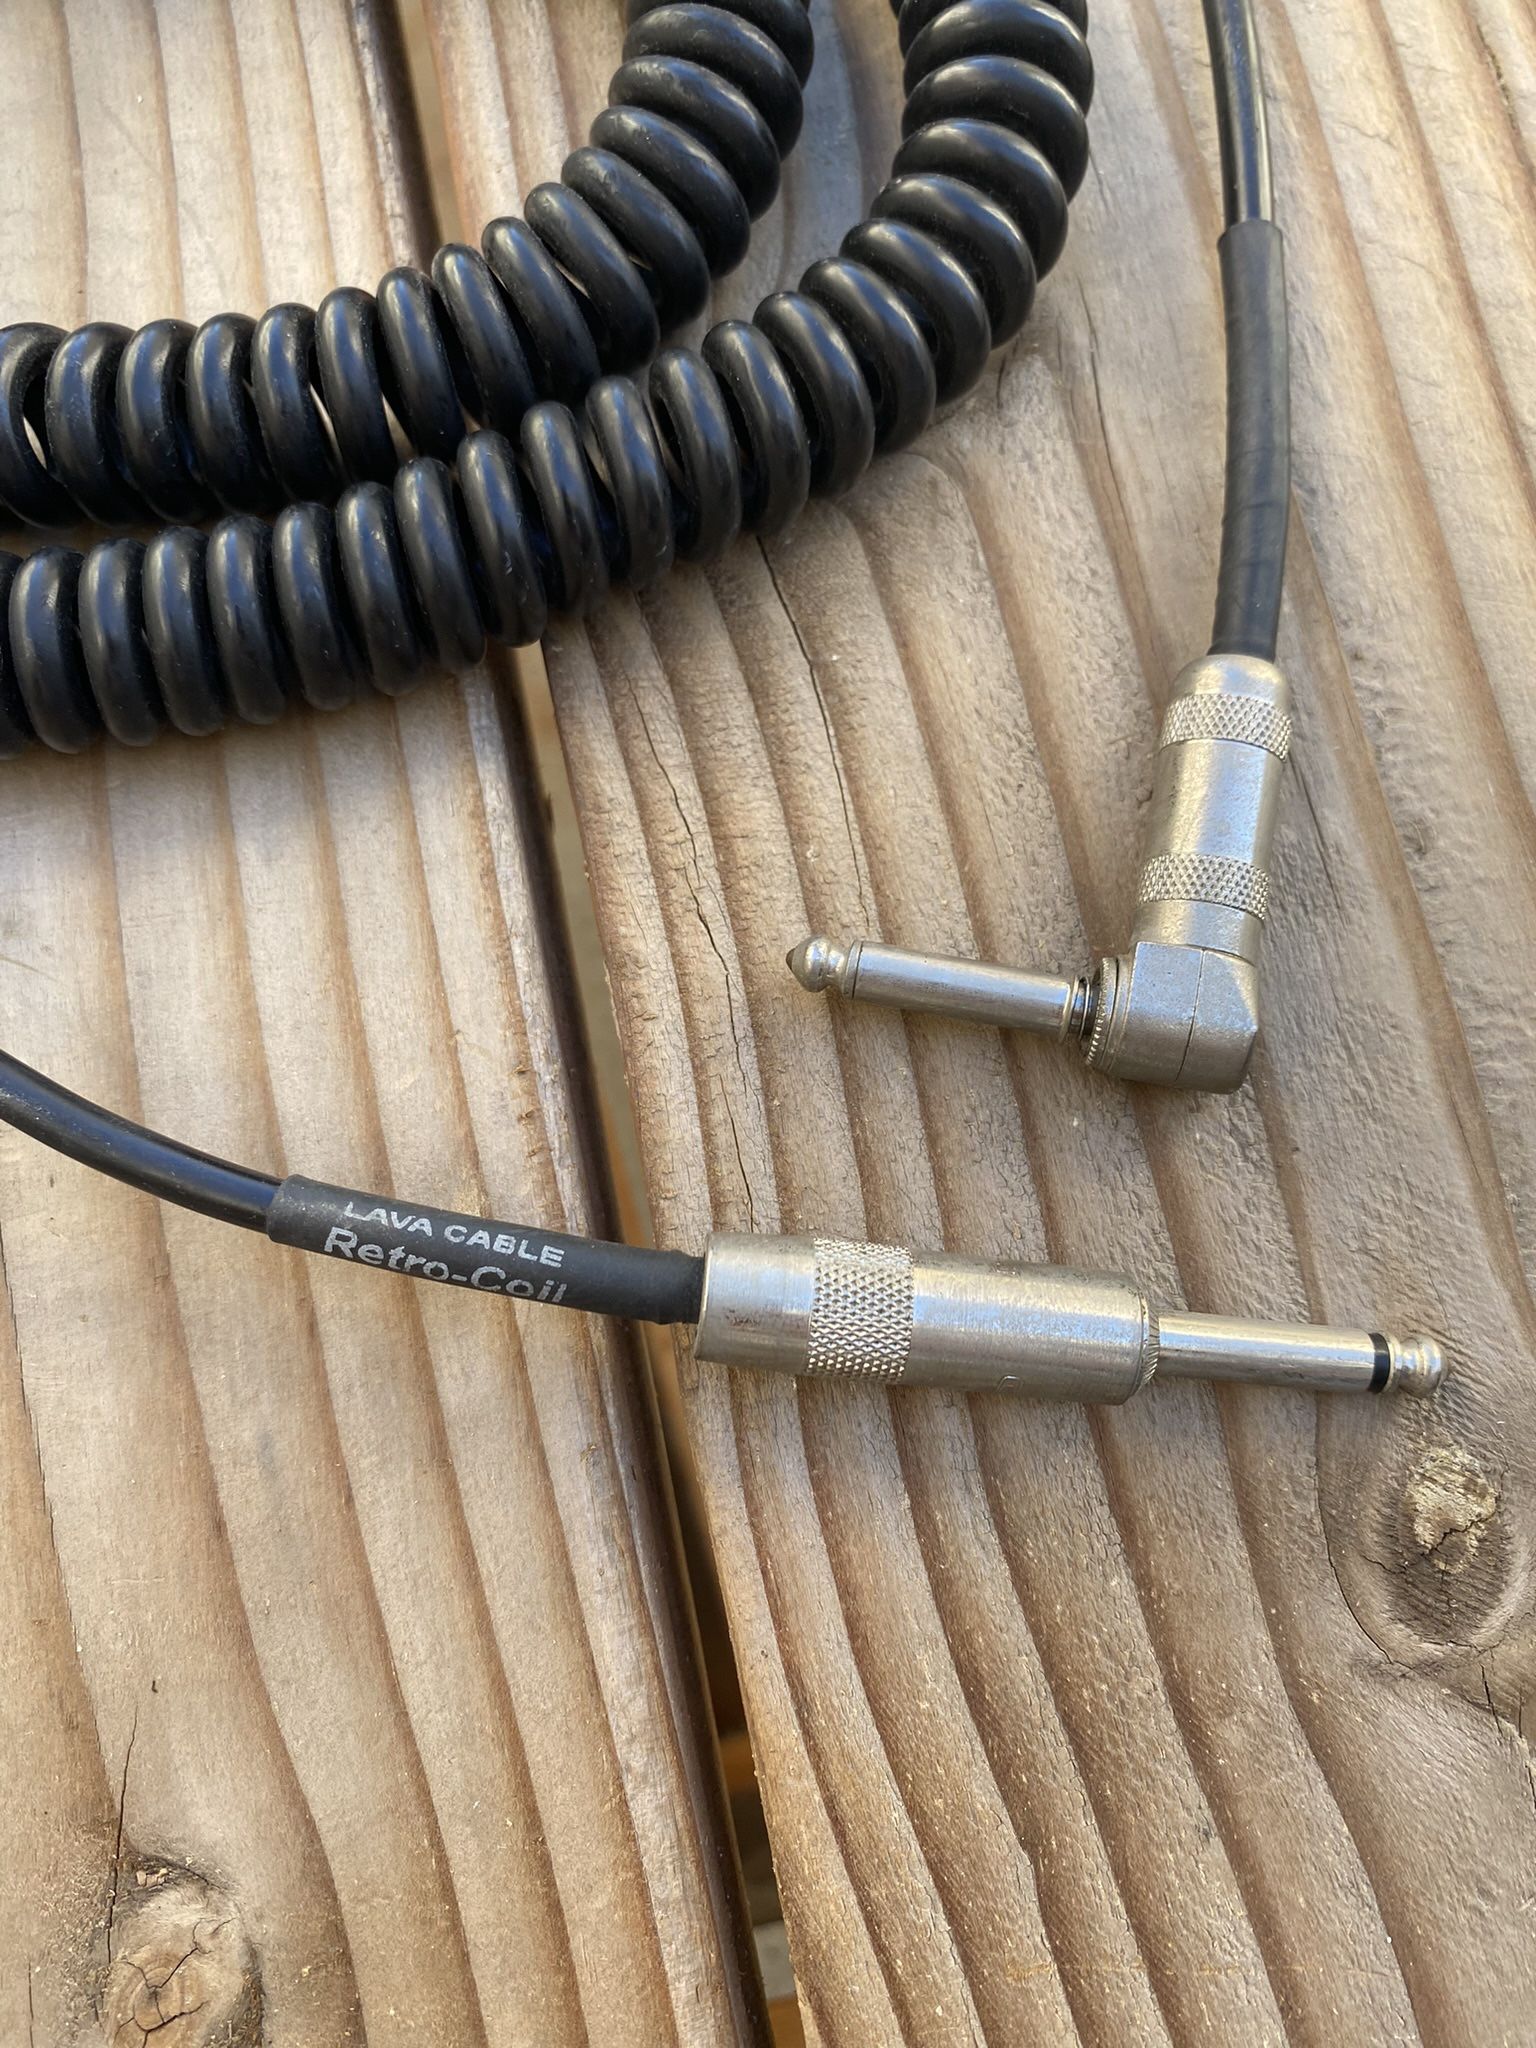 Lava Cable